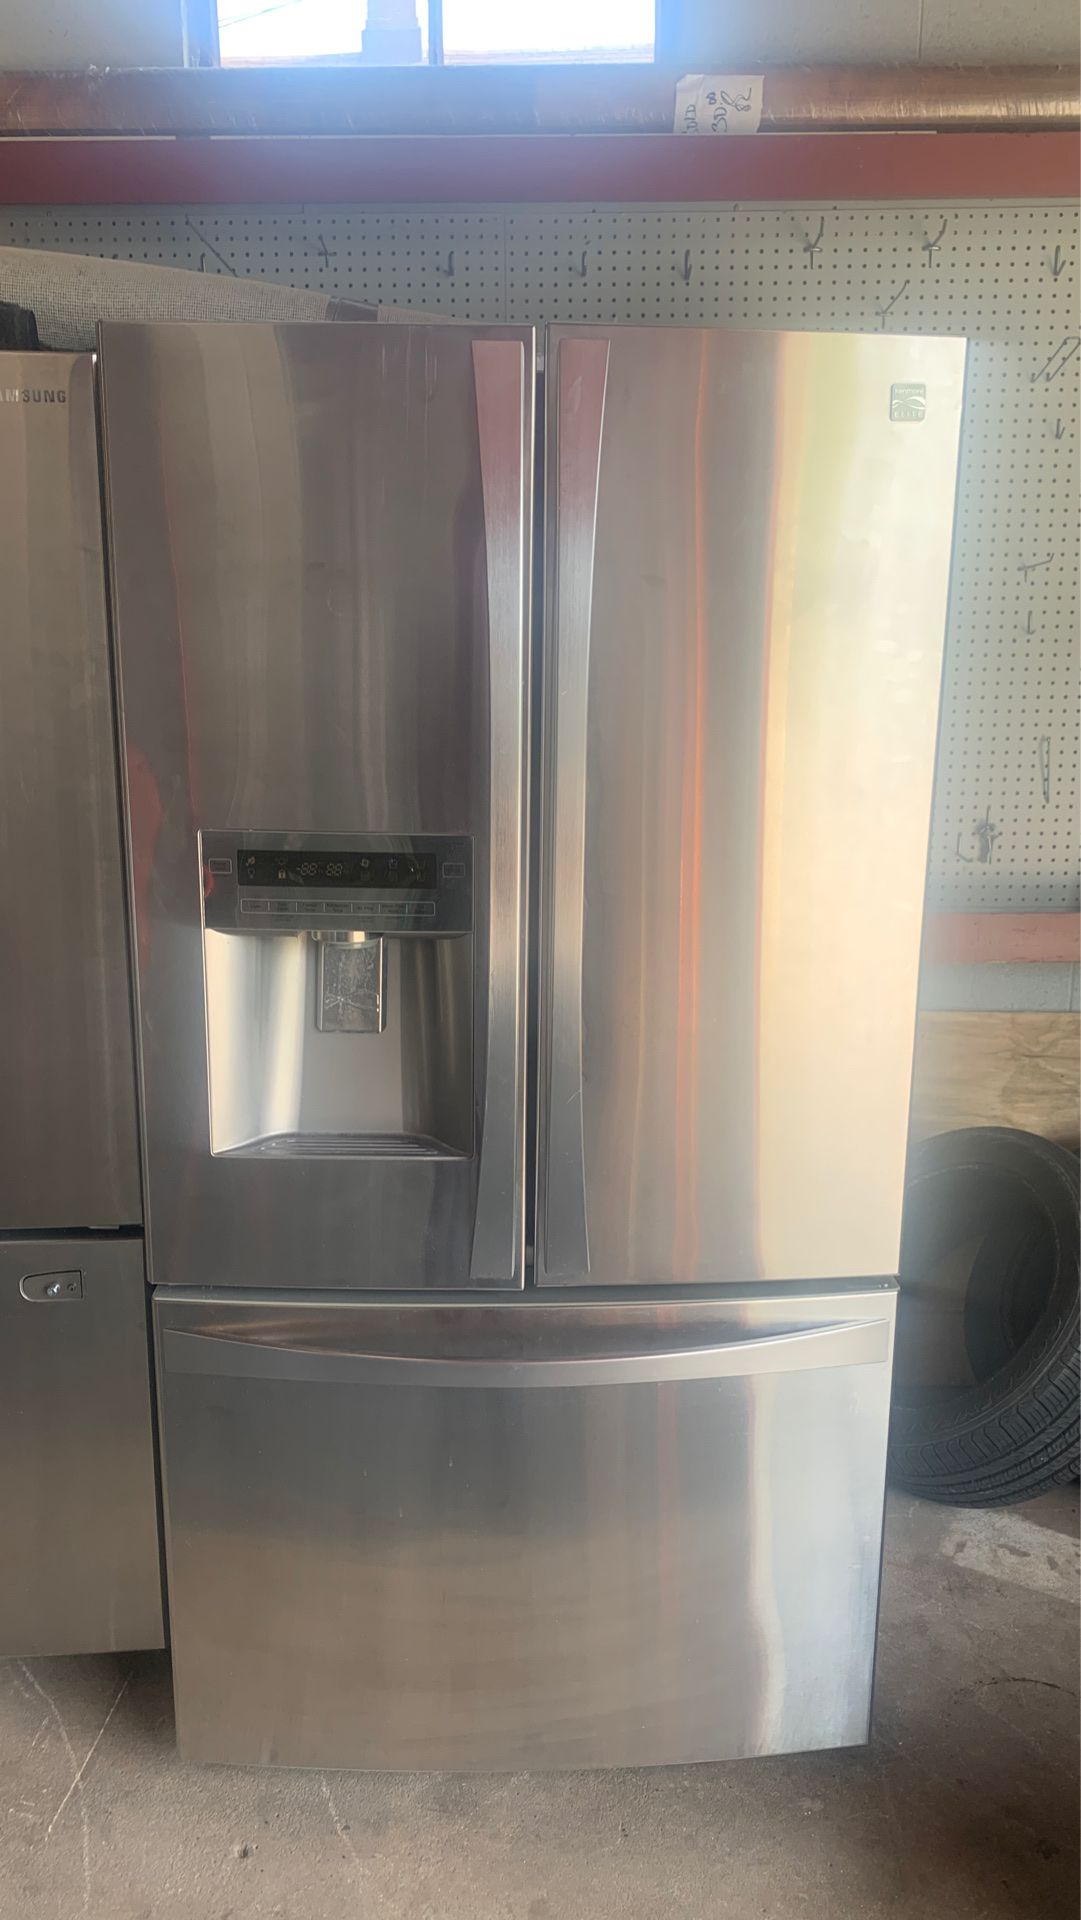 Stainless steel Kenmore elite refrigerator